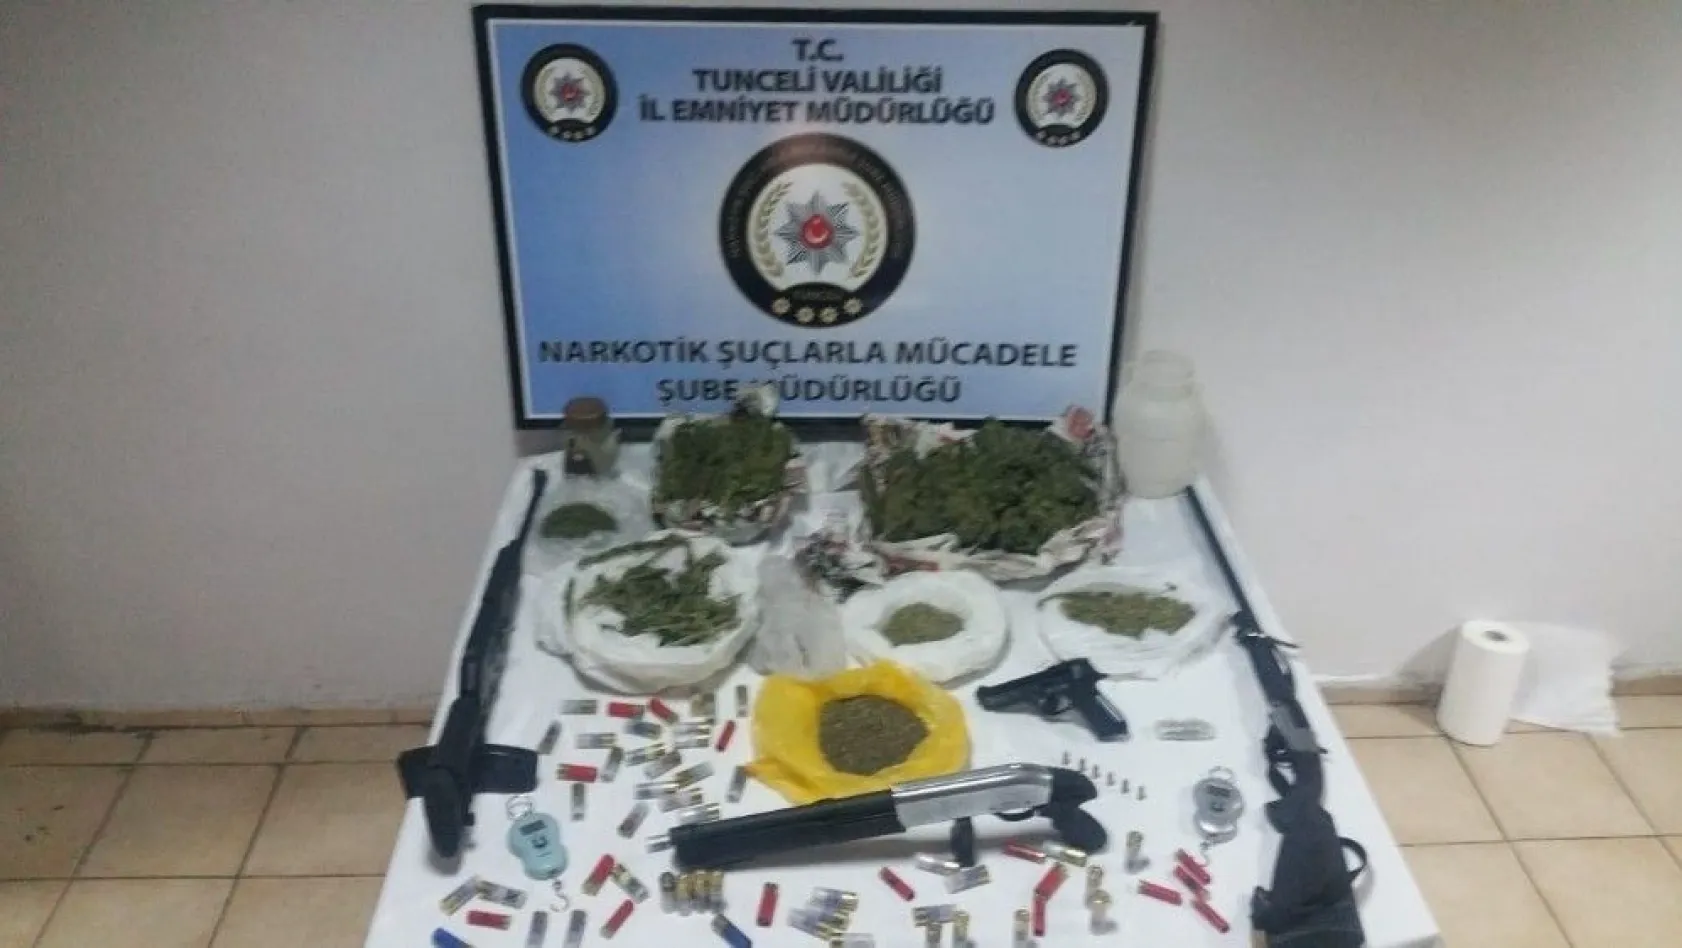 Tunceli'de uyuşturucu operasyonu:1 şüpheli tutuklandı
